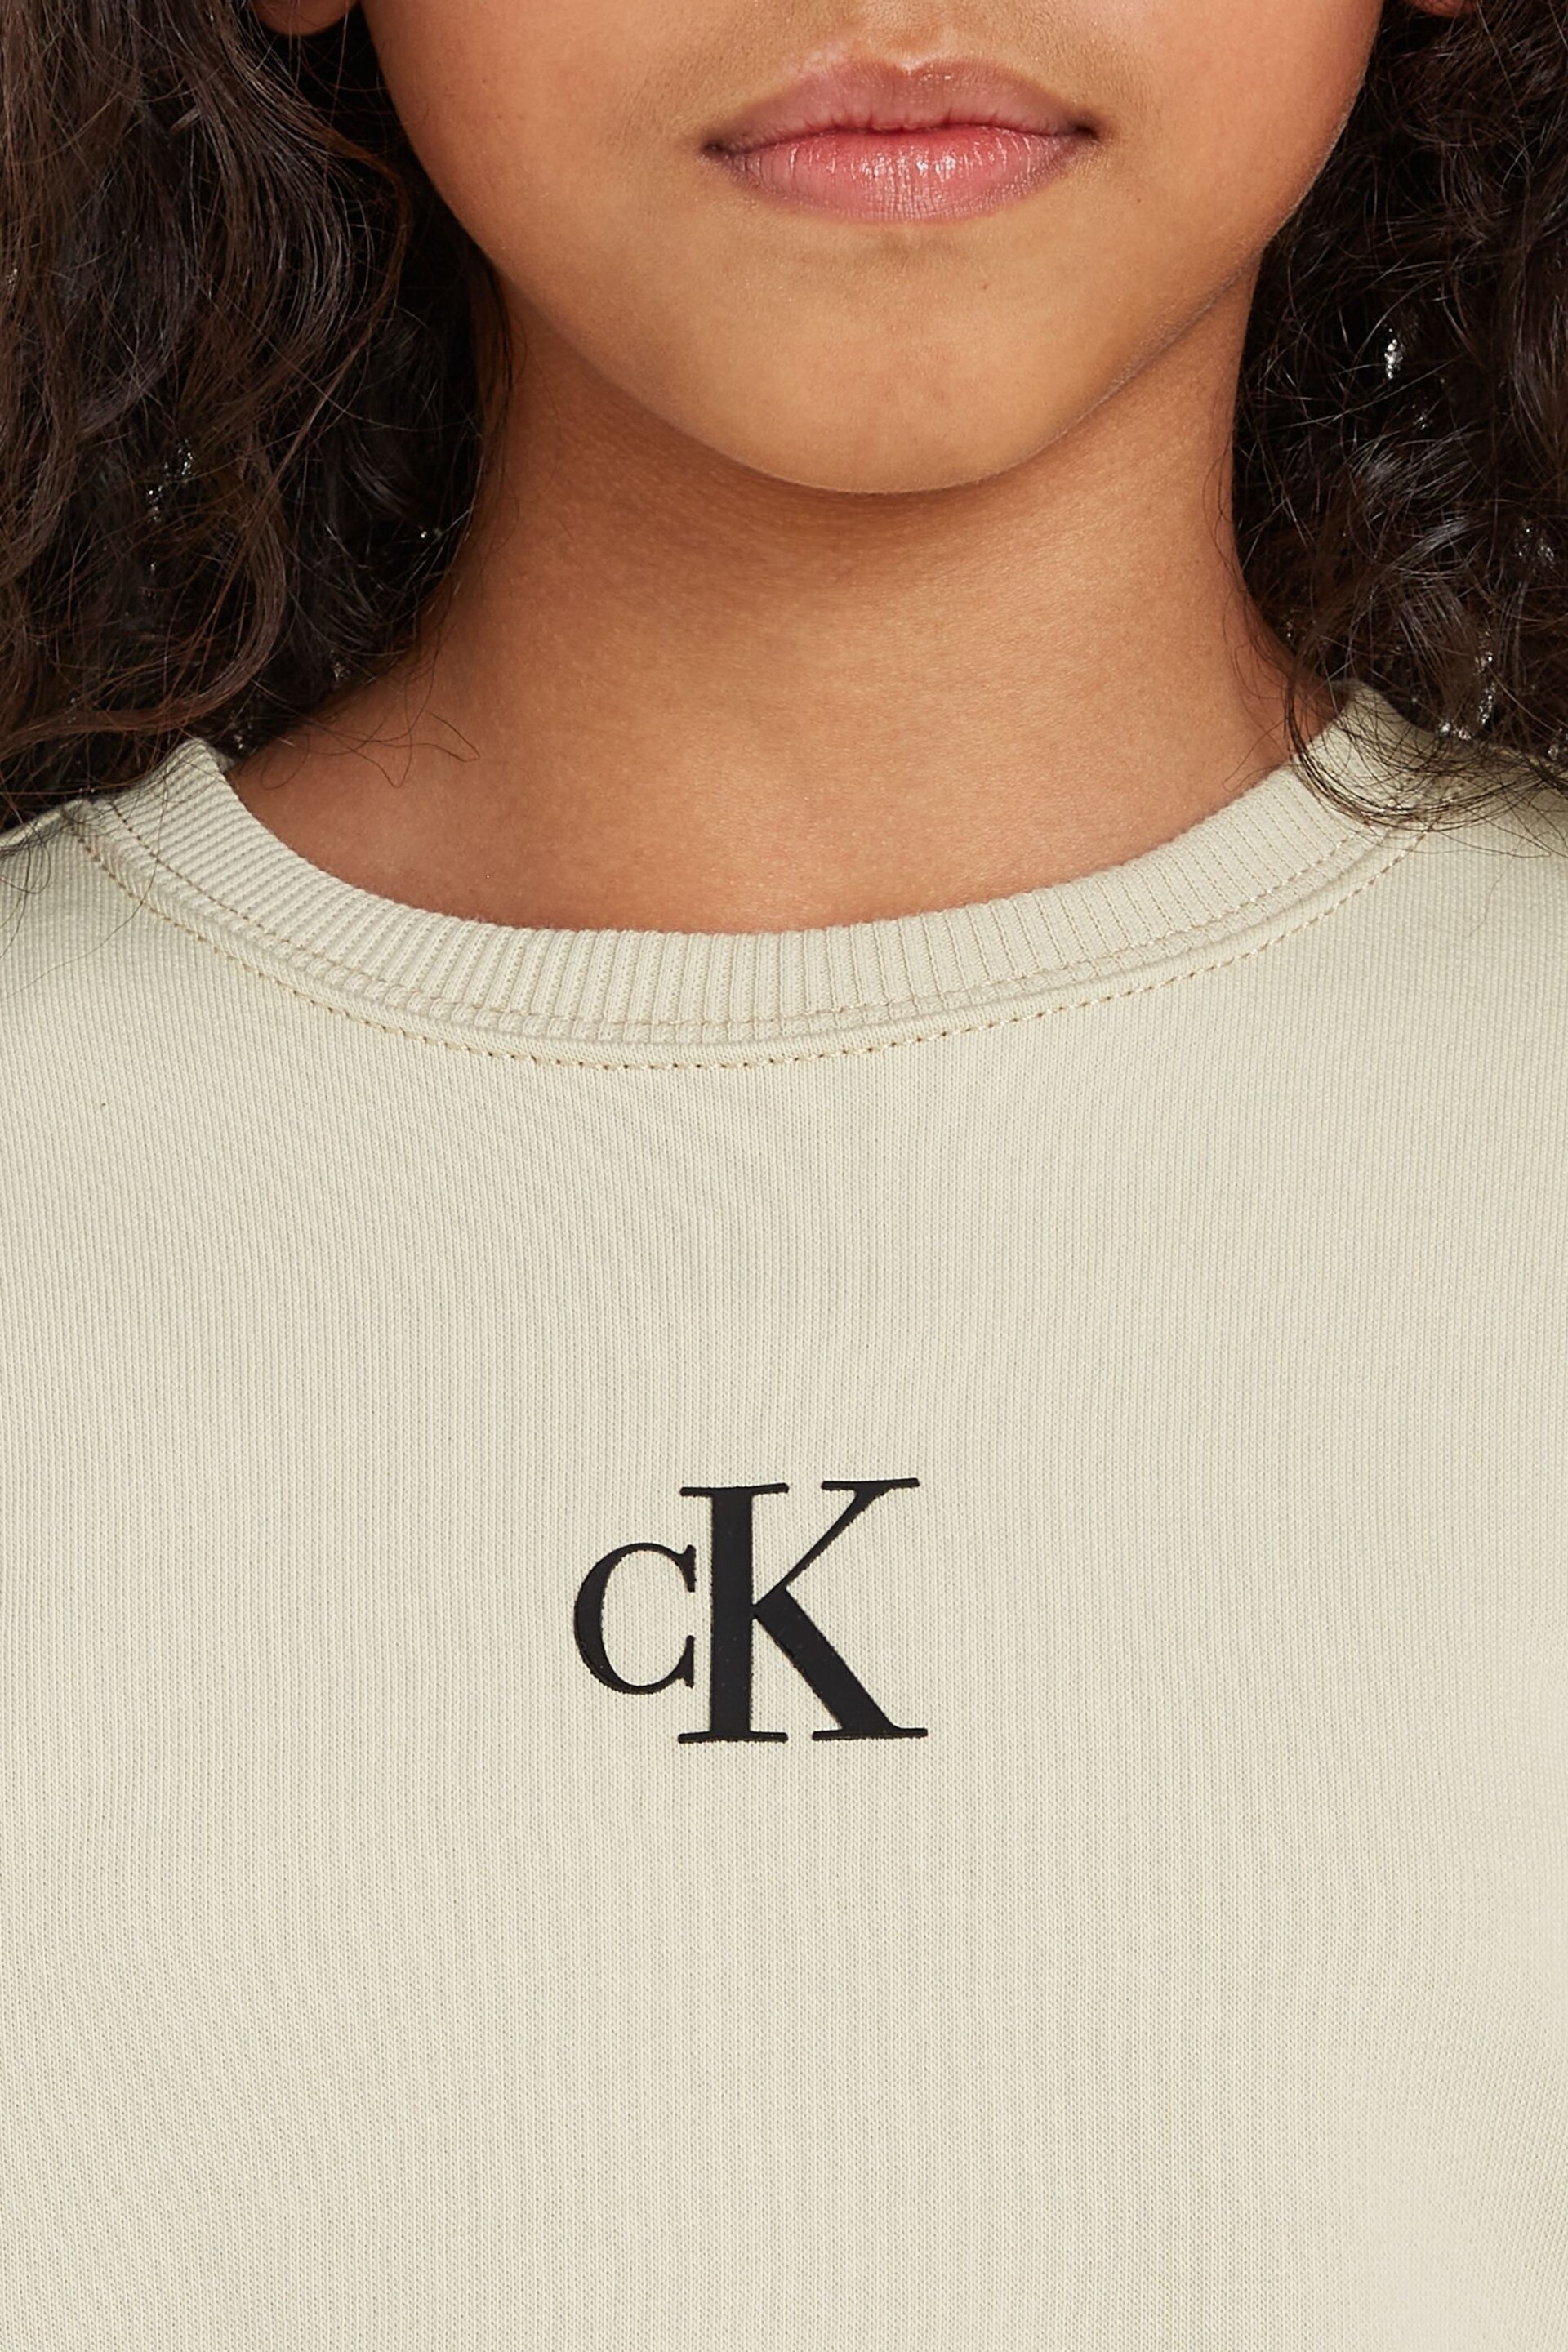 Calvin Klein Green Logo Sweatshirt Shorts Set - Image 3 of 7